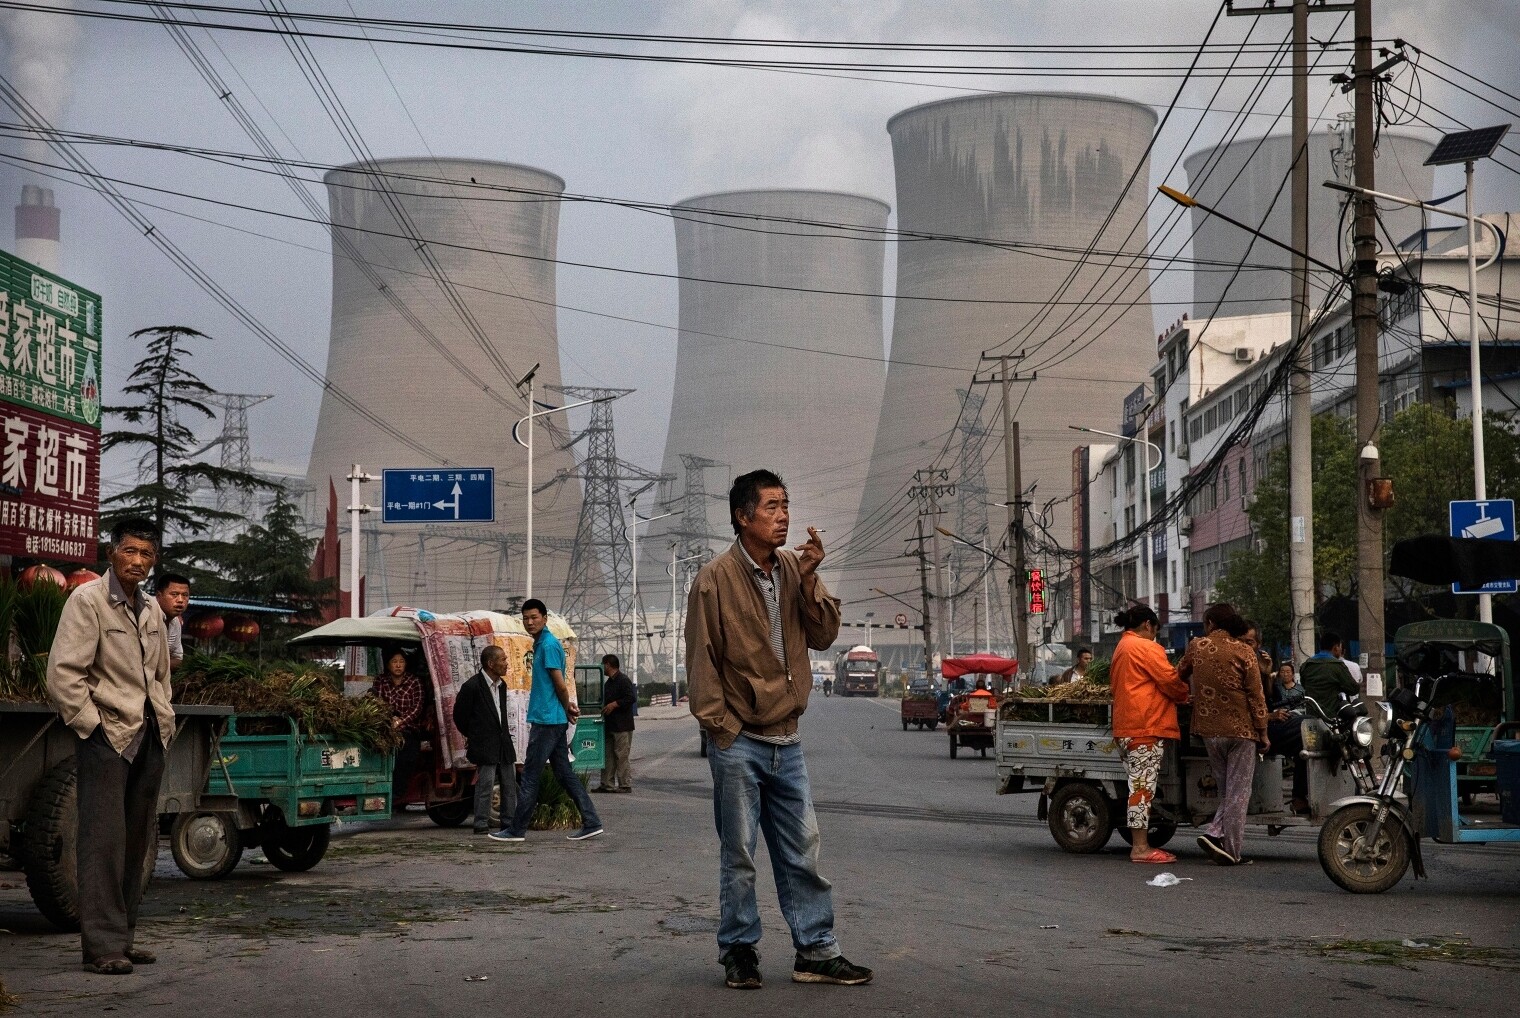 В Китае некоторым заводам запретили работать днем, а местным жителям включать микроволновки и обогреватели из-за энергокризиса в стране